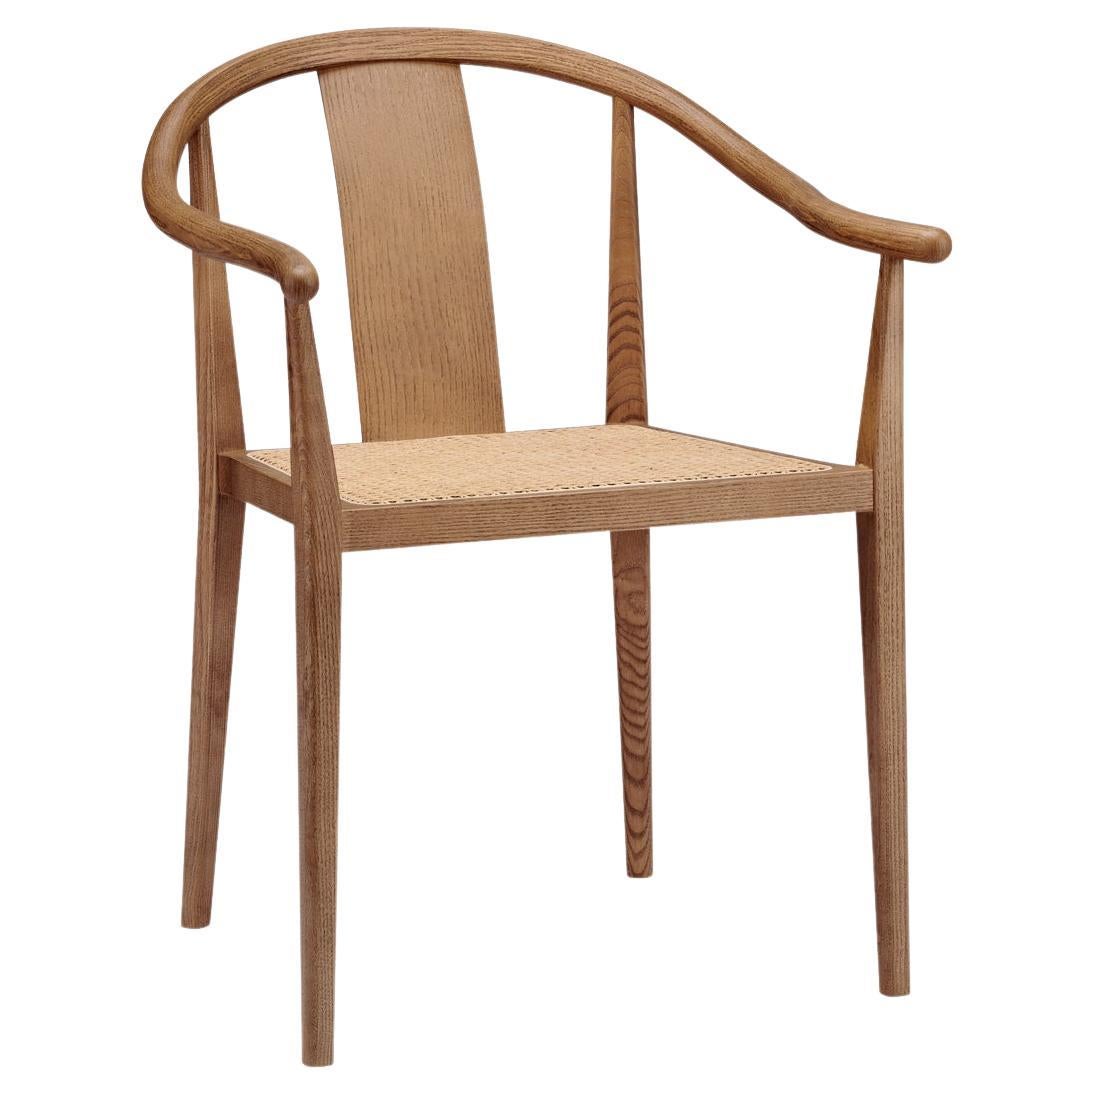 „Shanghai“-Stuhl von Norr11, helles geräuchertes Eichenholz, natürliches Rattan